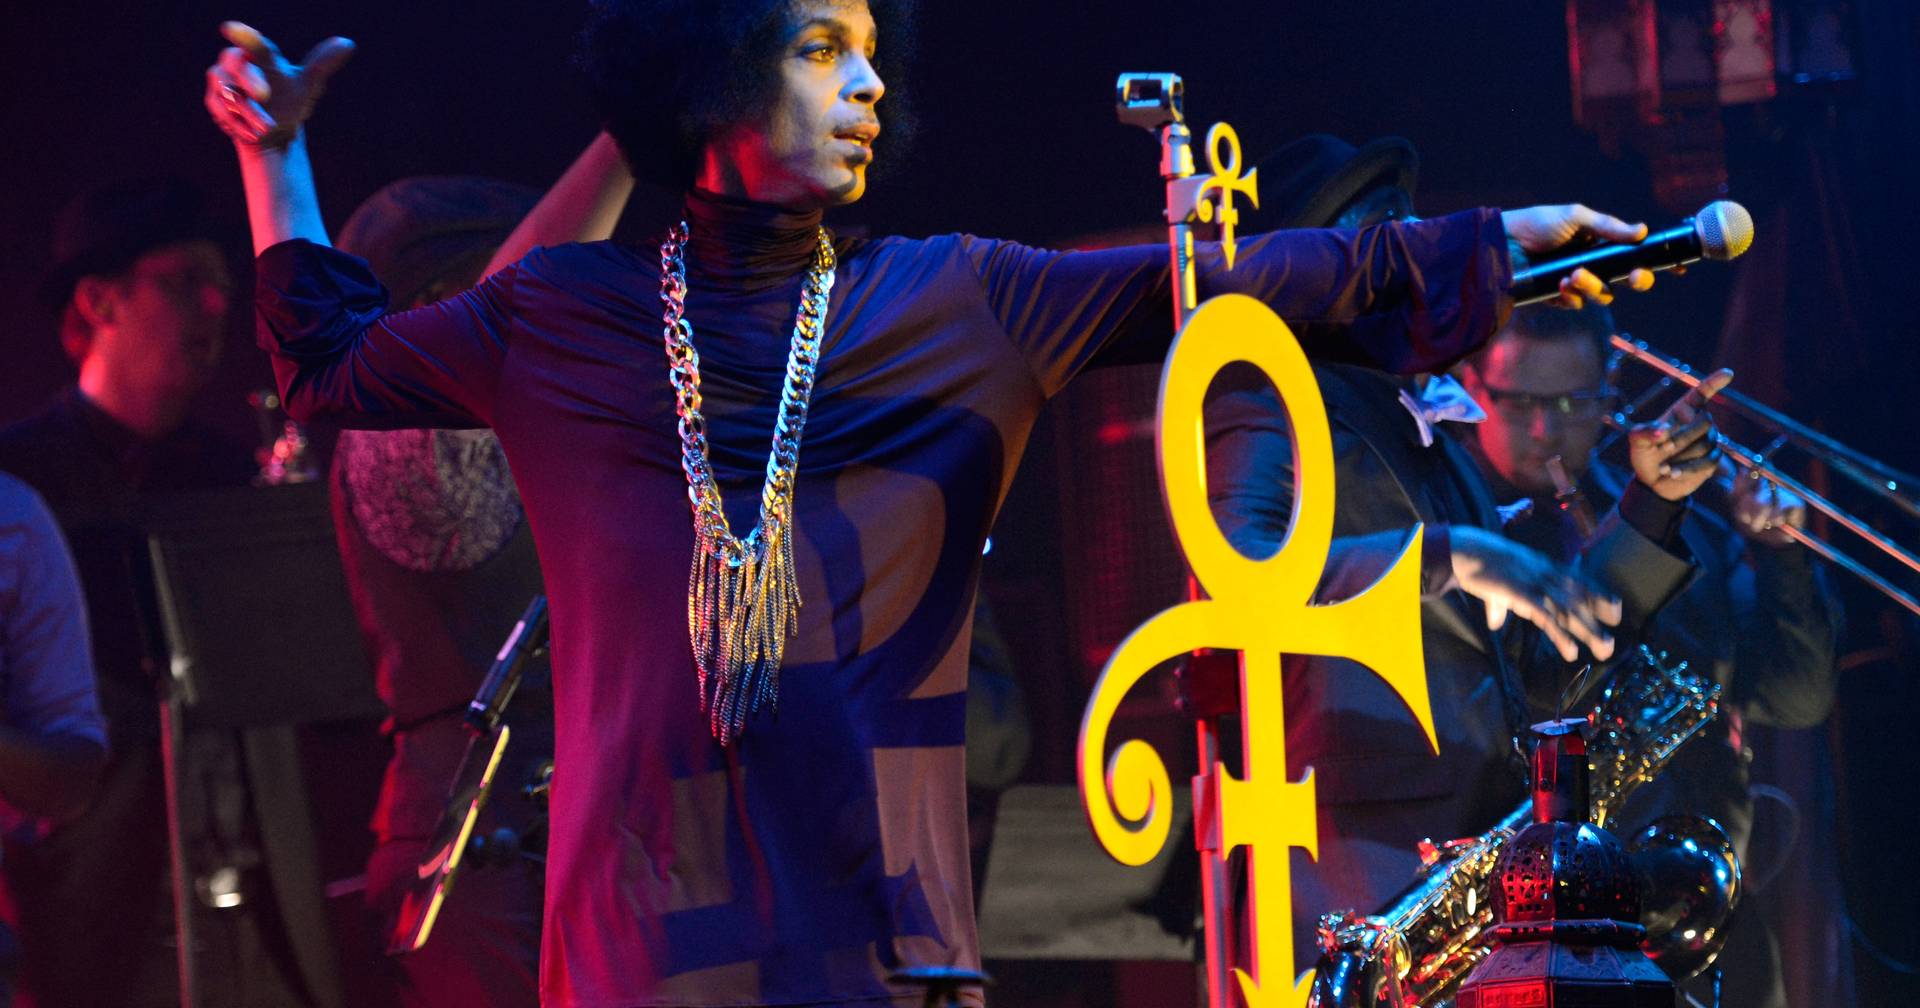 Seis anos depois, os herdeiros de Prince terminaram a batalha legal pelos bens do músico